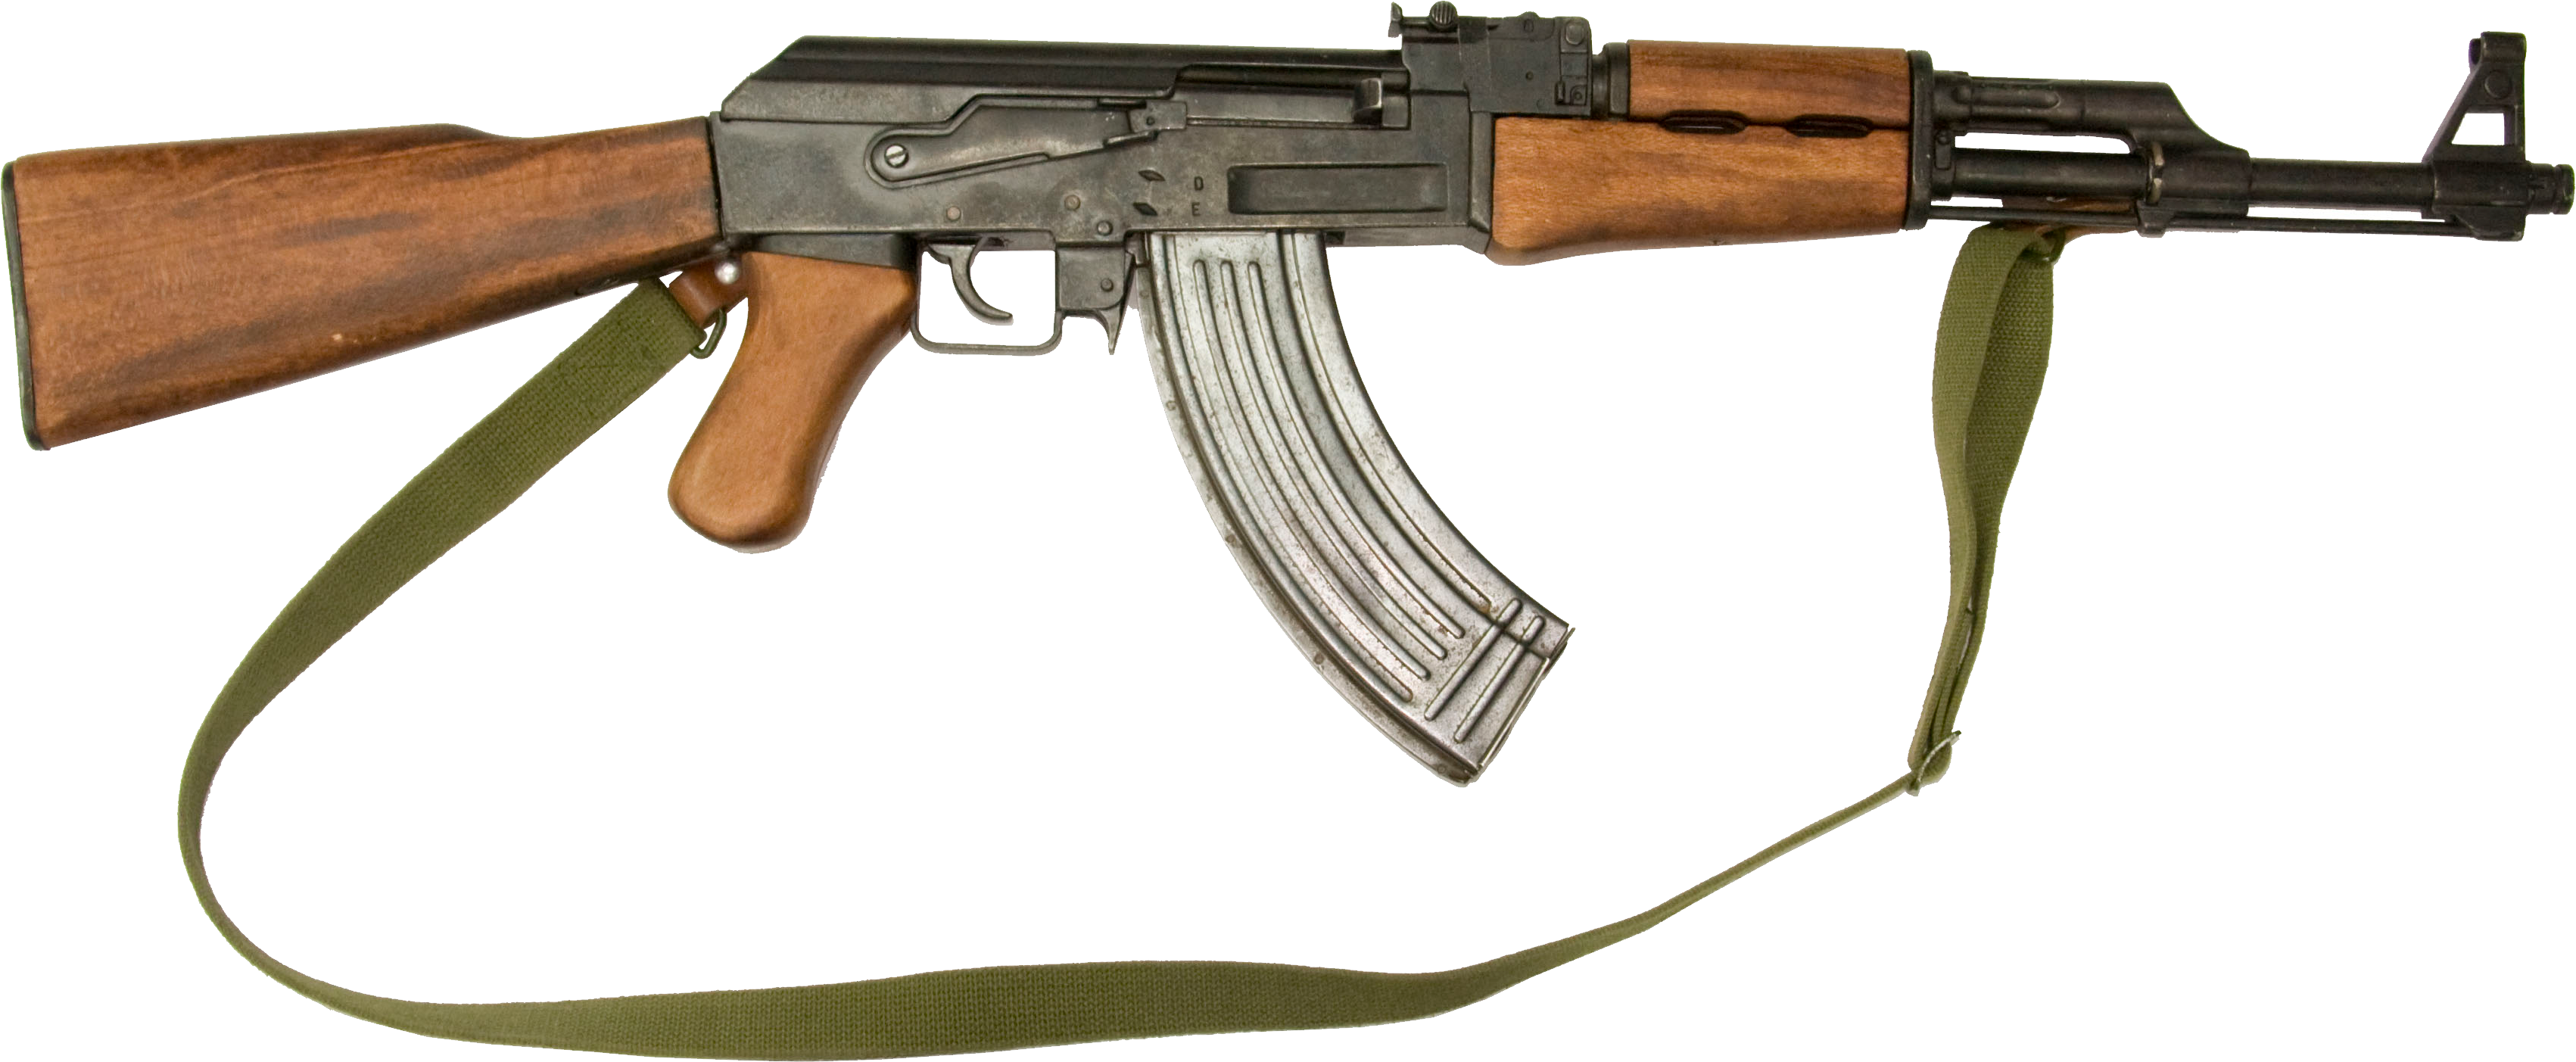 AK 47 PNG image free Download 